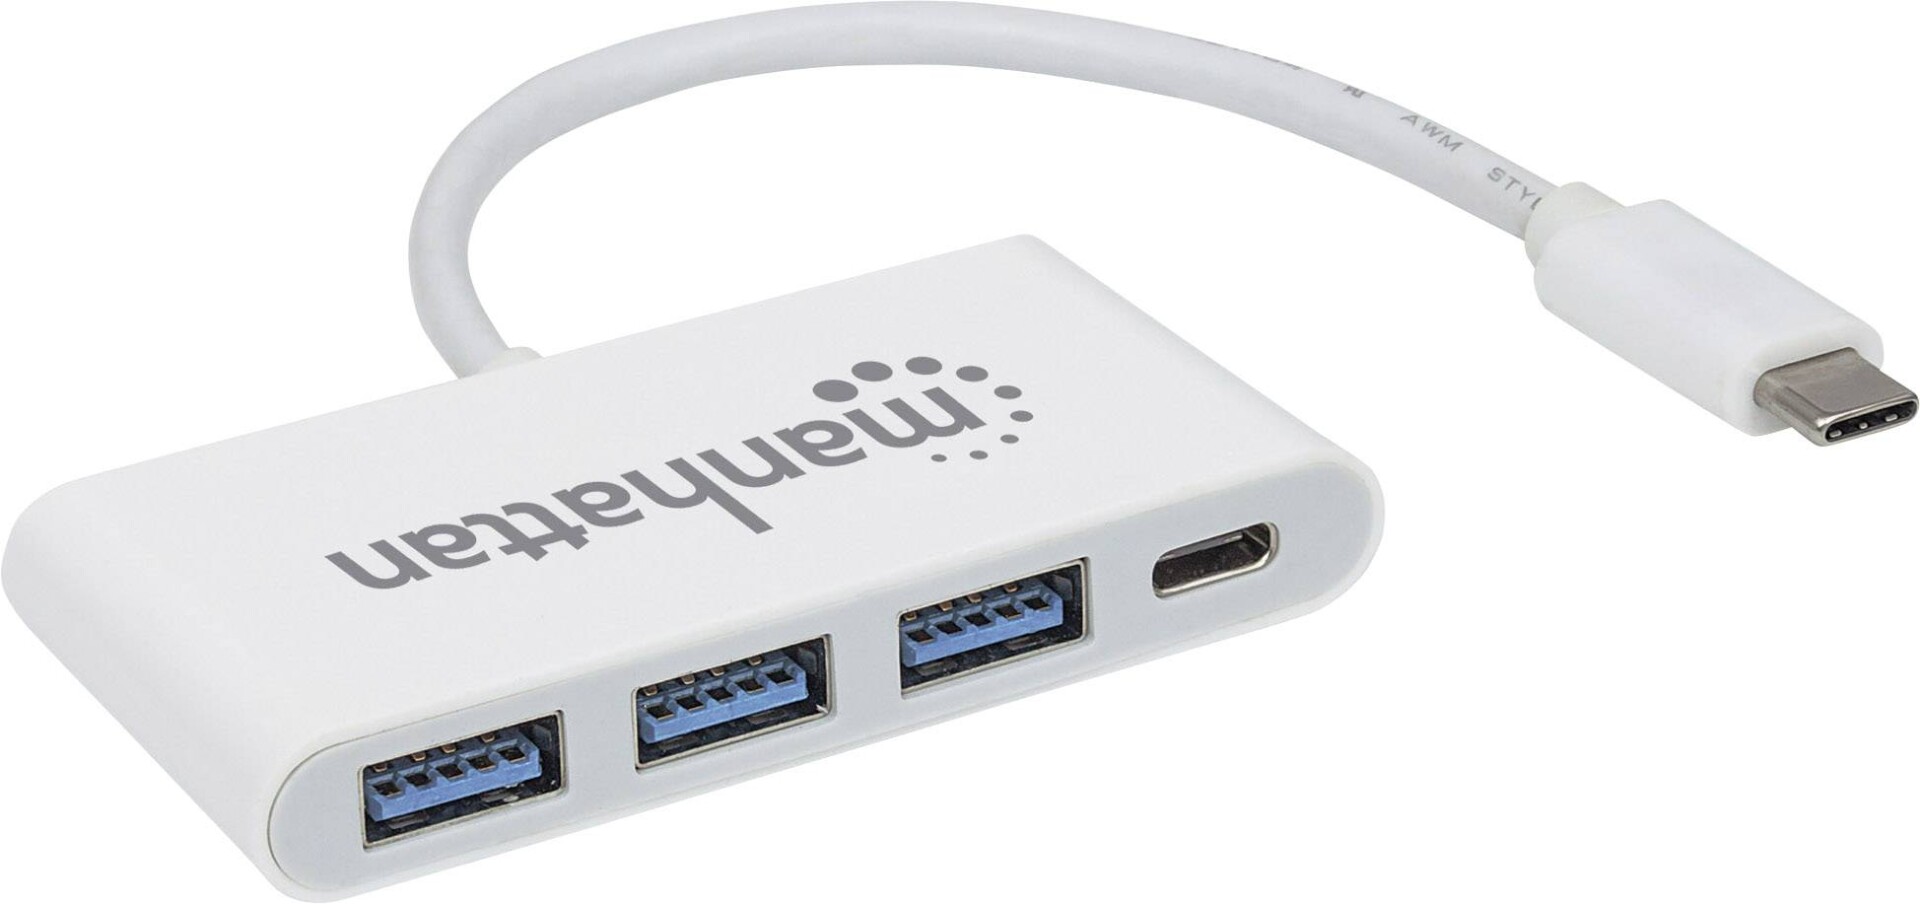 Hub USB C 3.1 a 3 Port USB 3.0 + 1 USB C hembra - Manhattan - 3543 